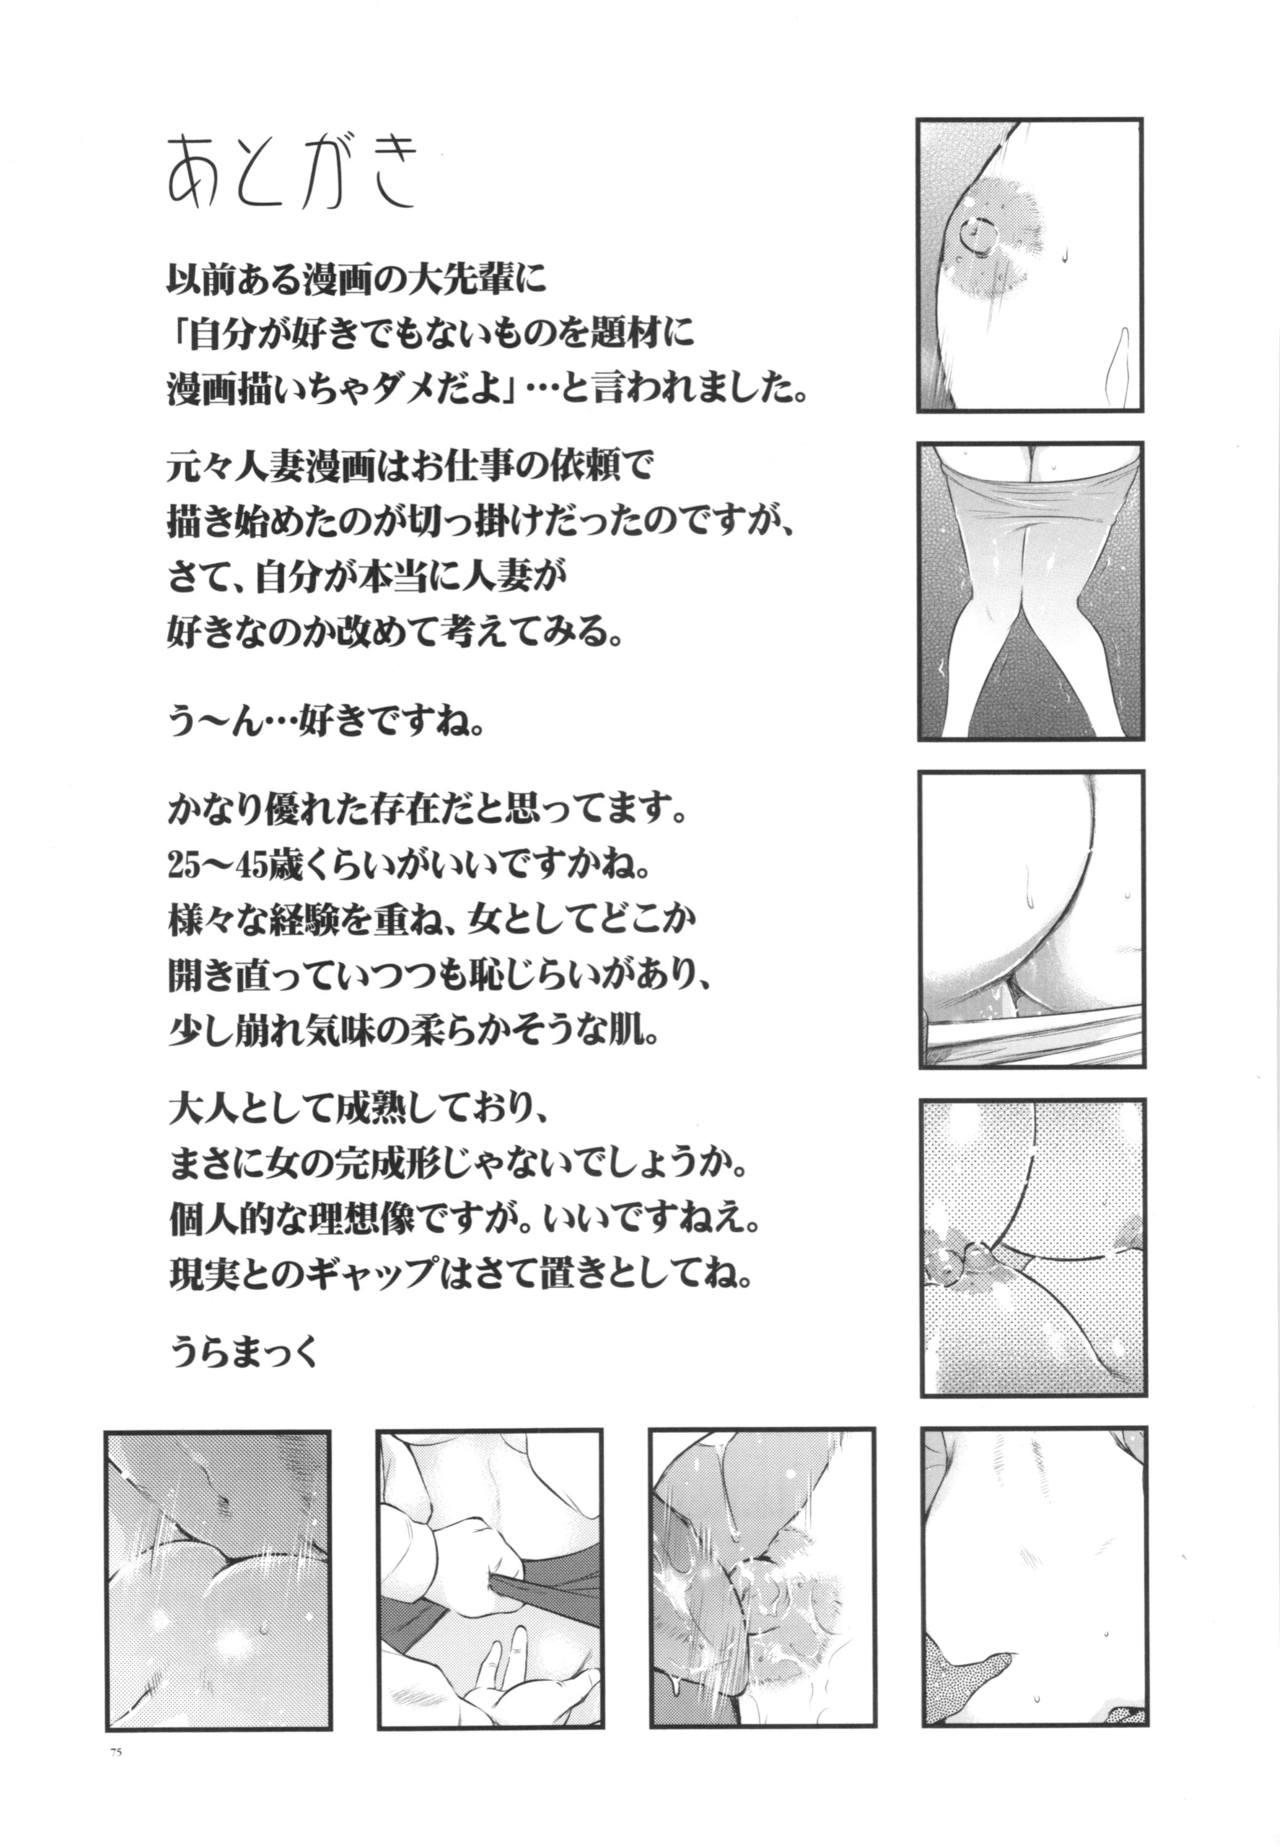 Doggie Style Porn Hitozuma Zukan 2 Rough Sex Porn - Page 75